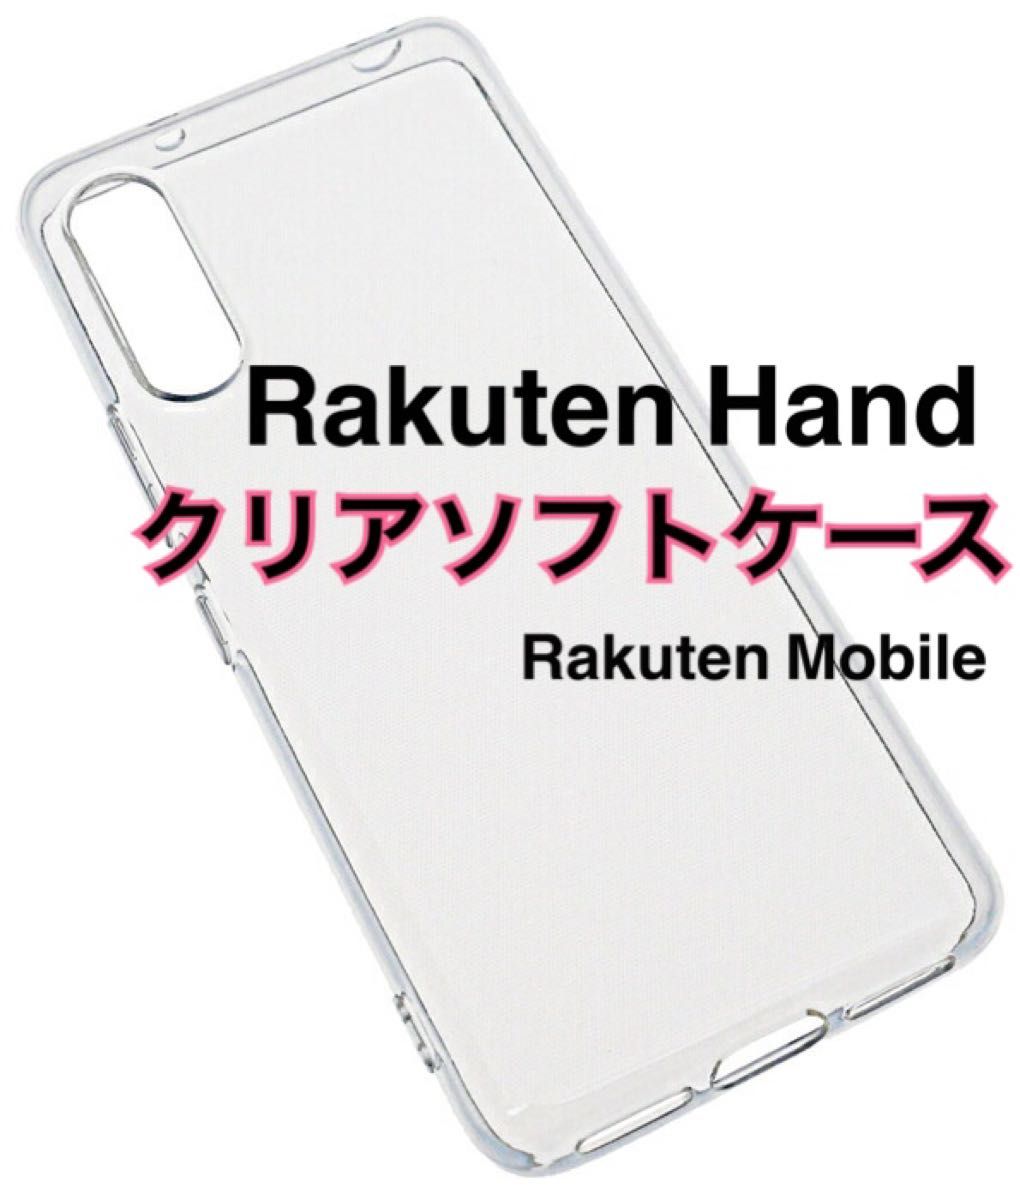 Rakuten Hand クリアソフトケース TPU 透明 新品未使用 楽天ハンド 楽天モバイル RakuteHand ラクテン